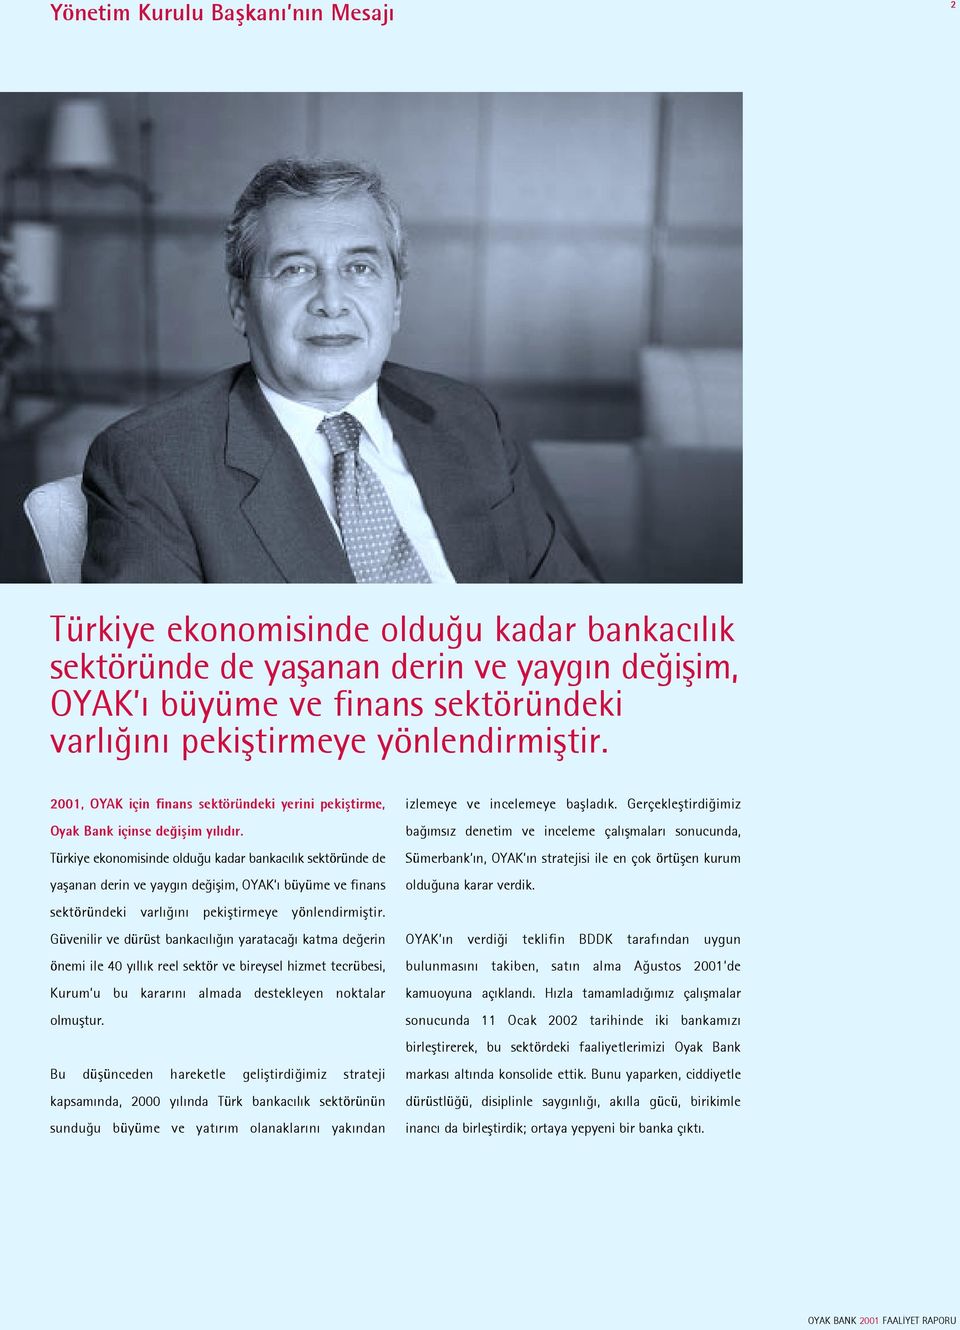 Türkiye ekonomisinde oldu u kadar bankac l k sektöründe de yaßanan derin ve yayg n de ißim, OYAK büyüme ve finans sektöründeki varl n pekißtirmeye yönlendirmißtir.